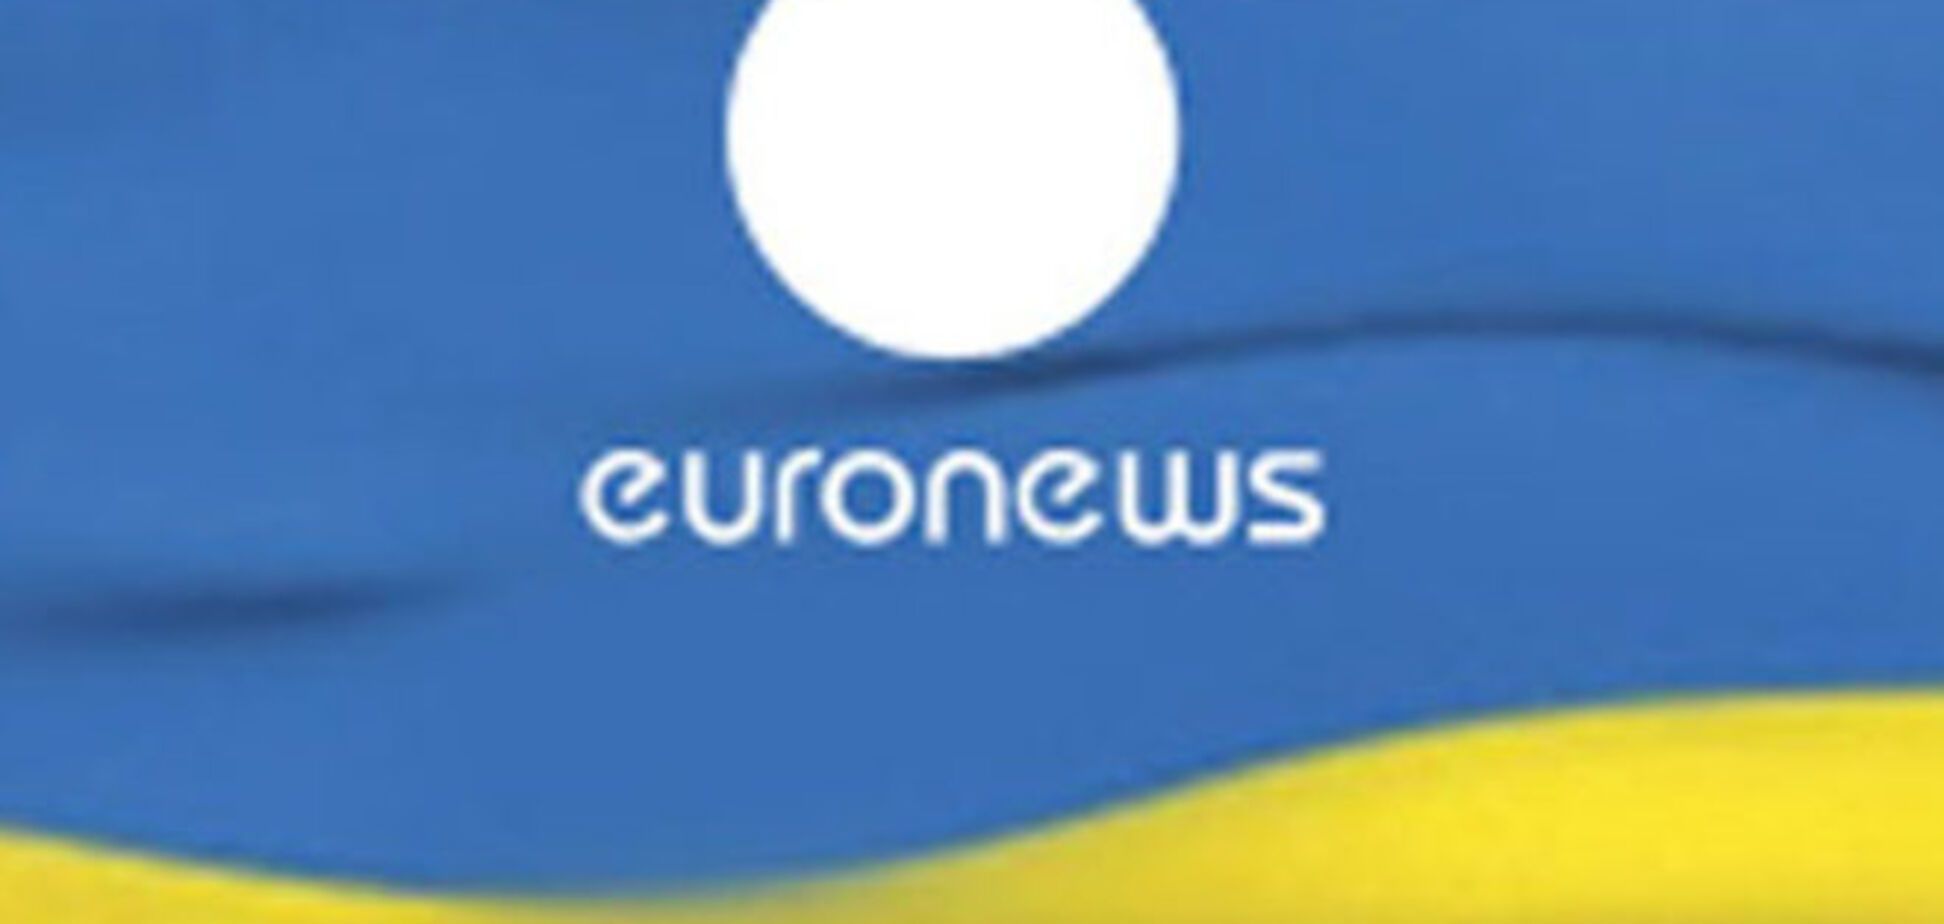 Украинская версия международного телеканала  Euronews может прекратить вещание